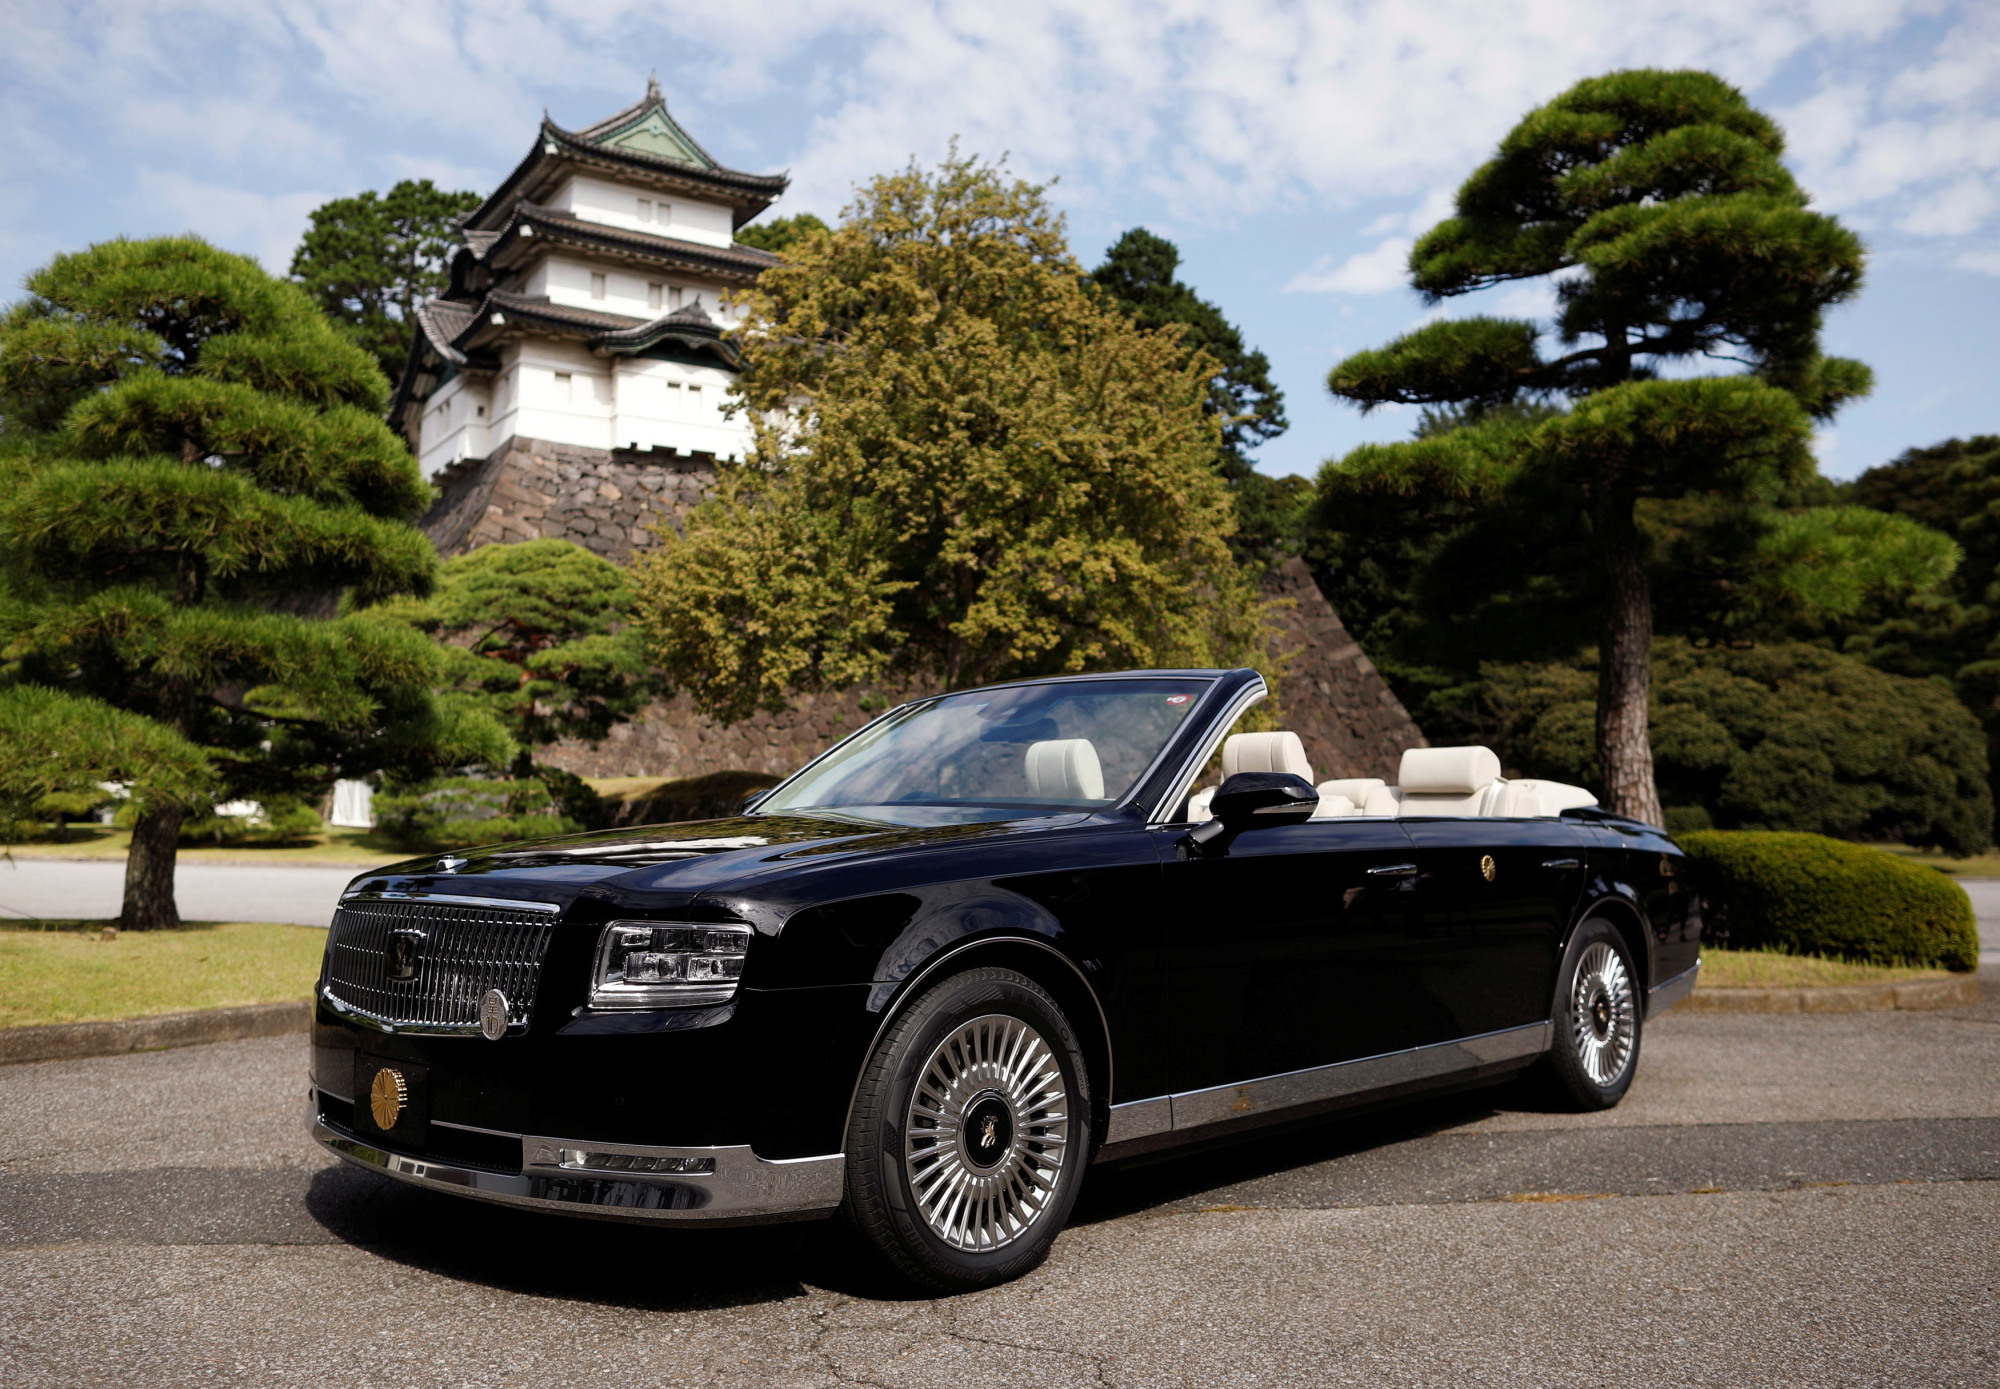 日本皇室御用车图片